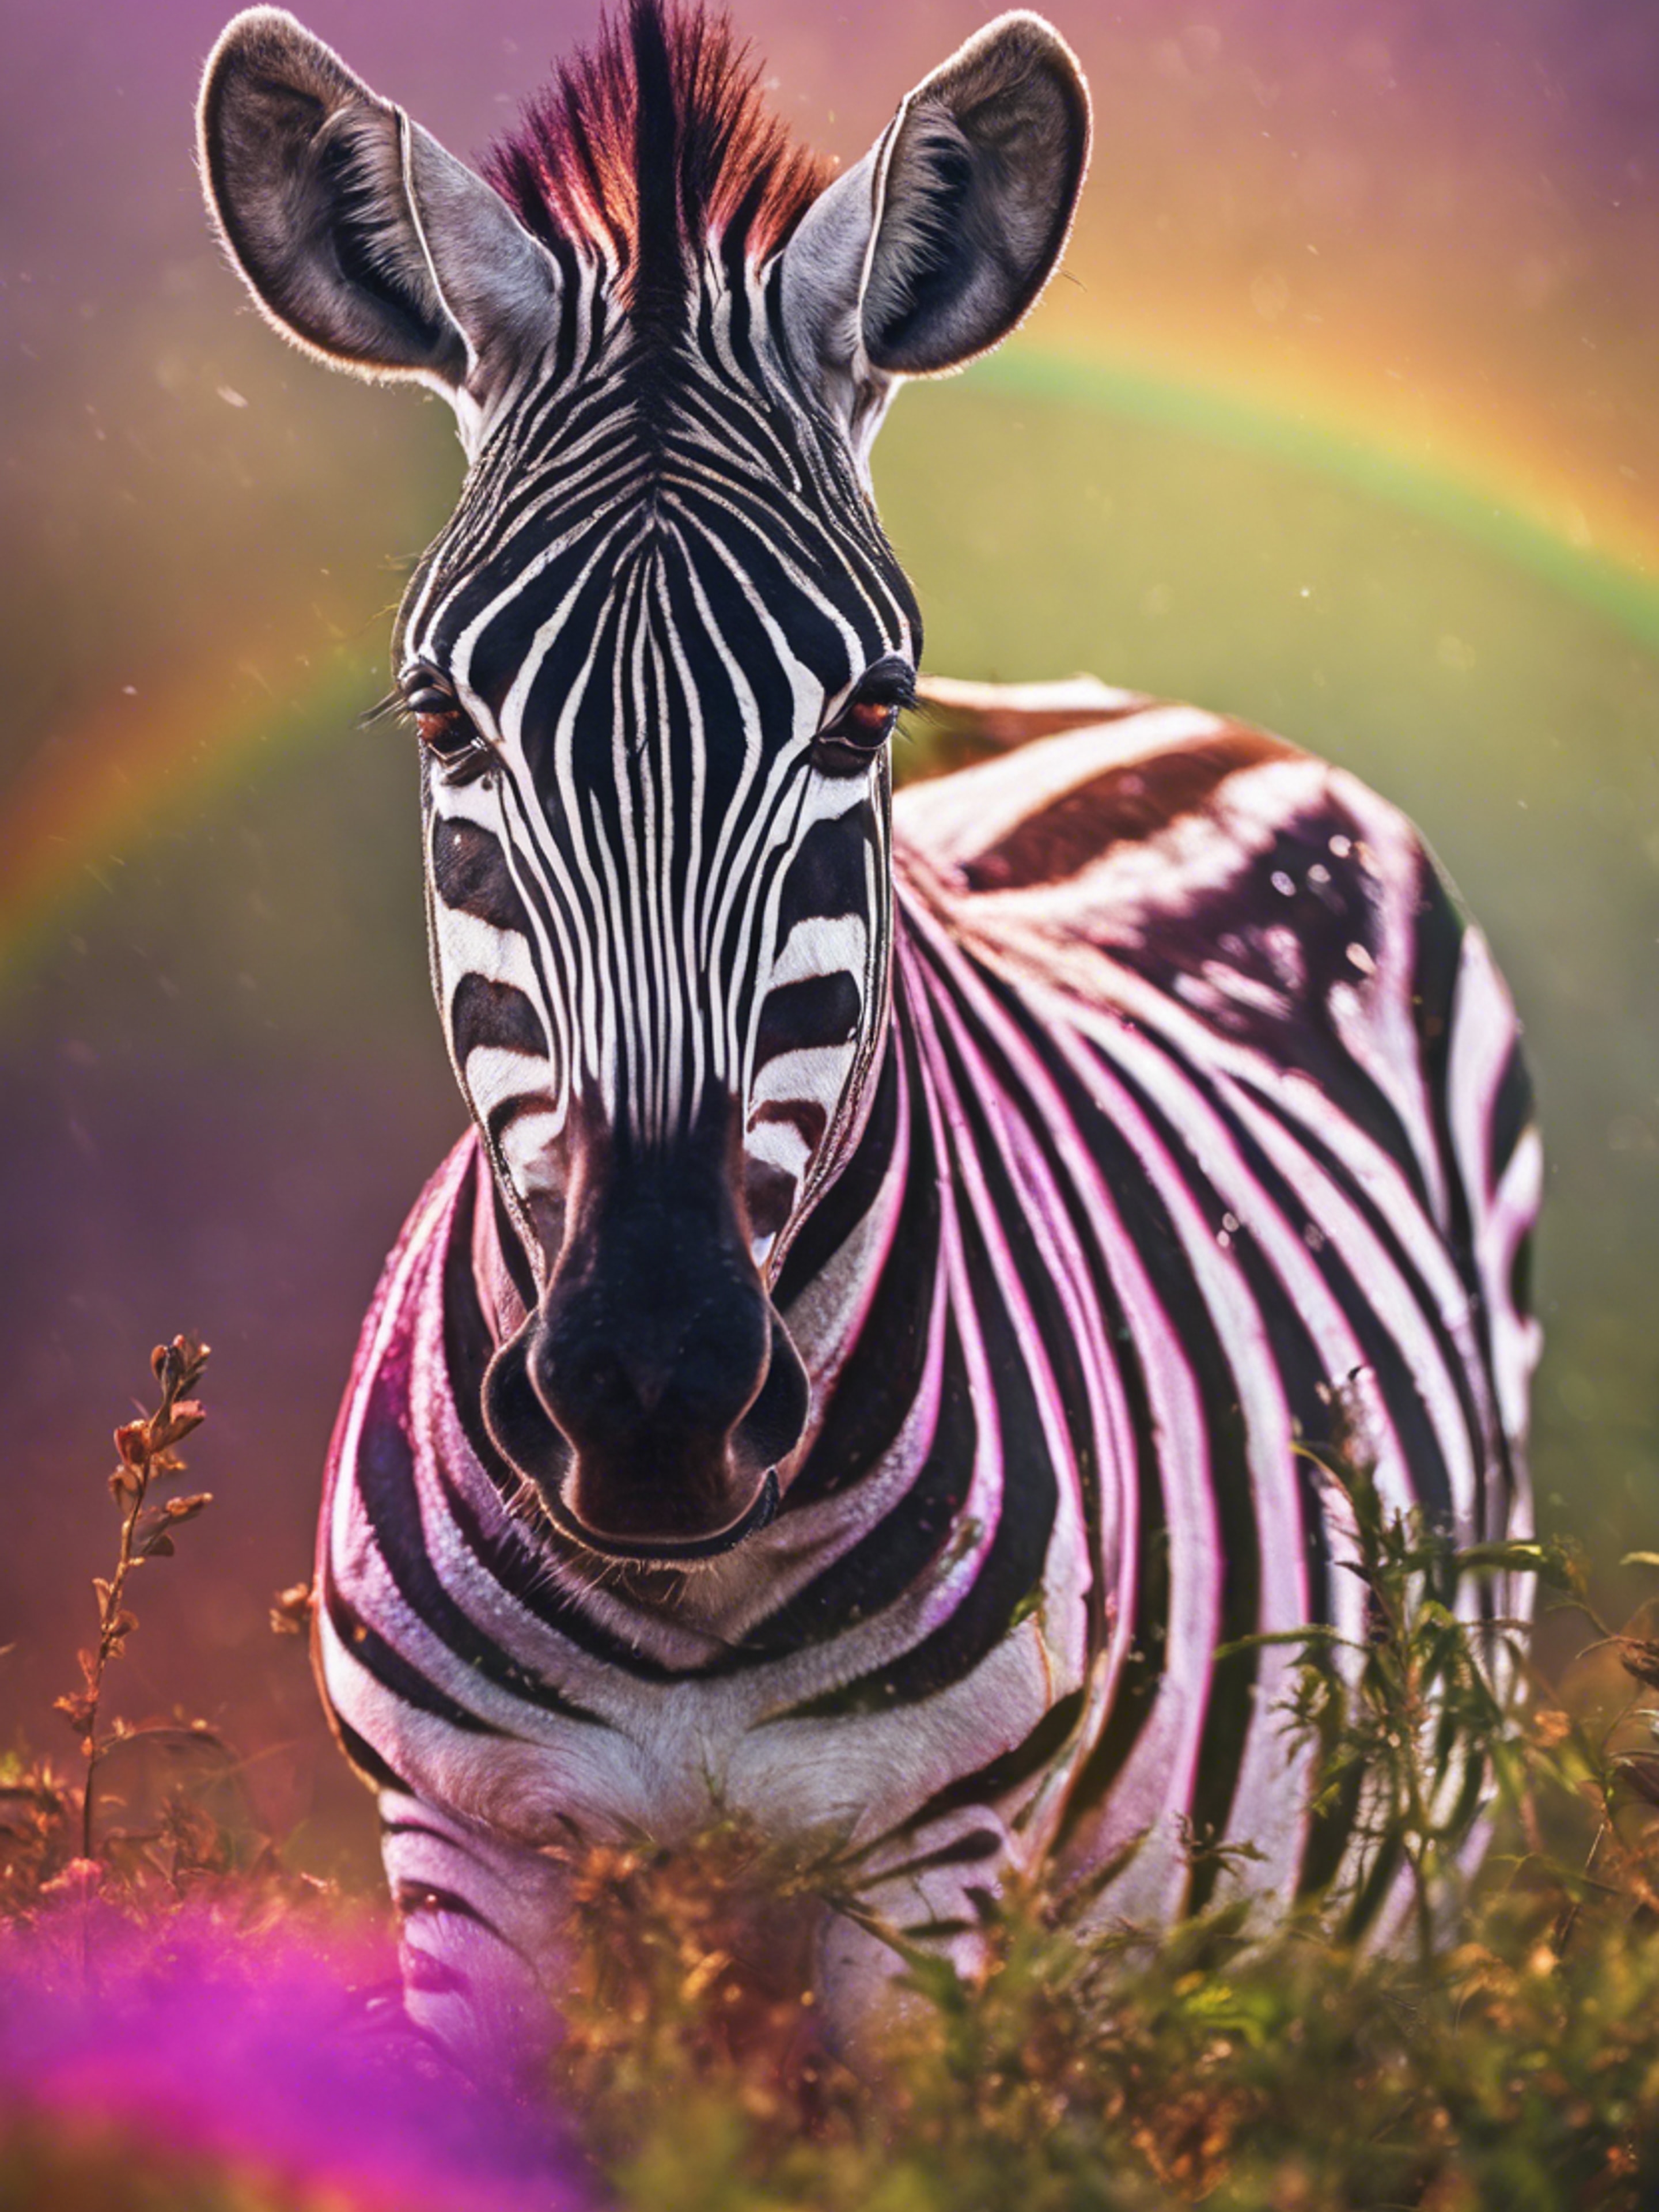 A zebra in the African wild under a vibrant rainbow after a short rain shower. duvar kağıdı[a984eacdffd5482bb541]